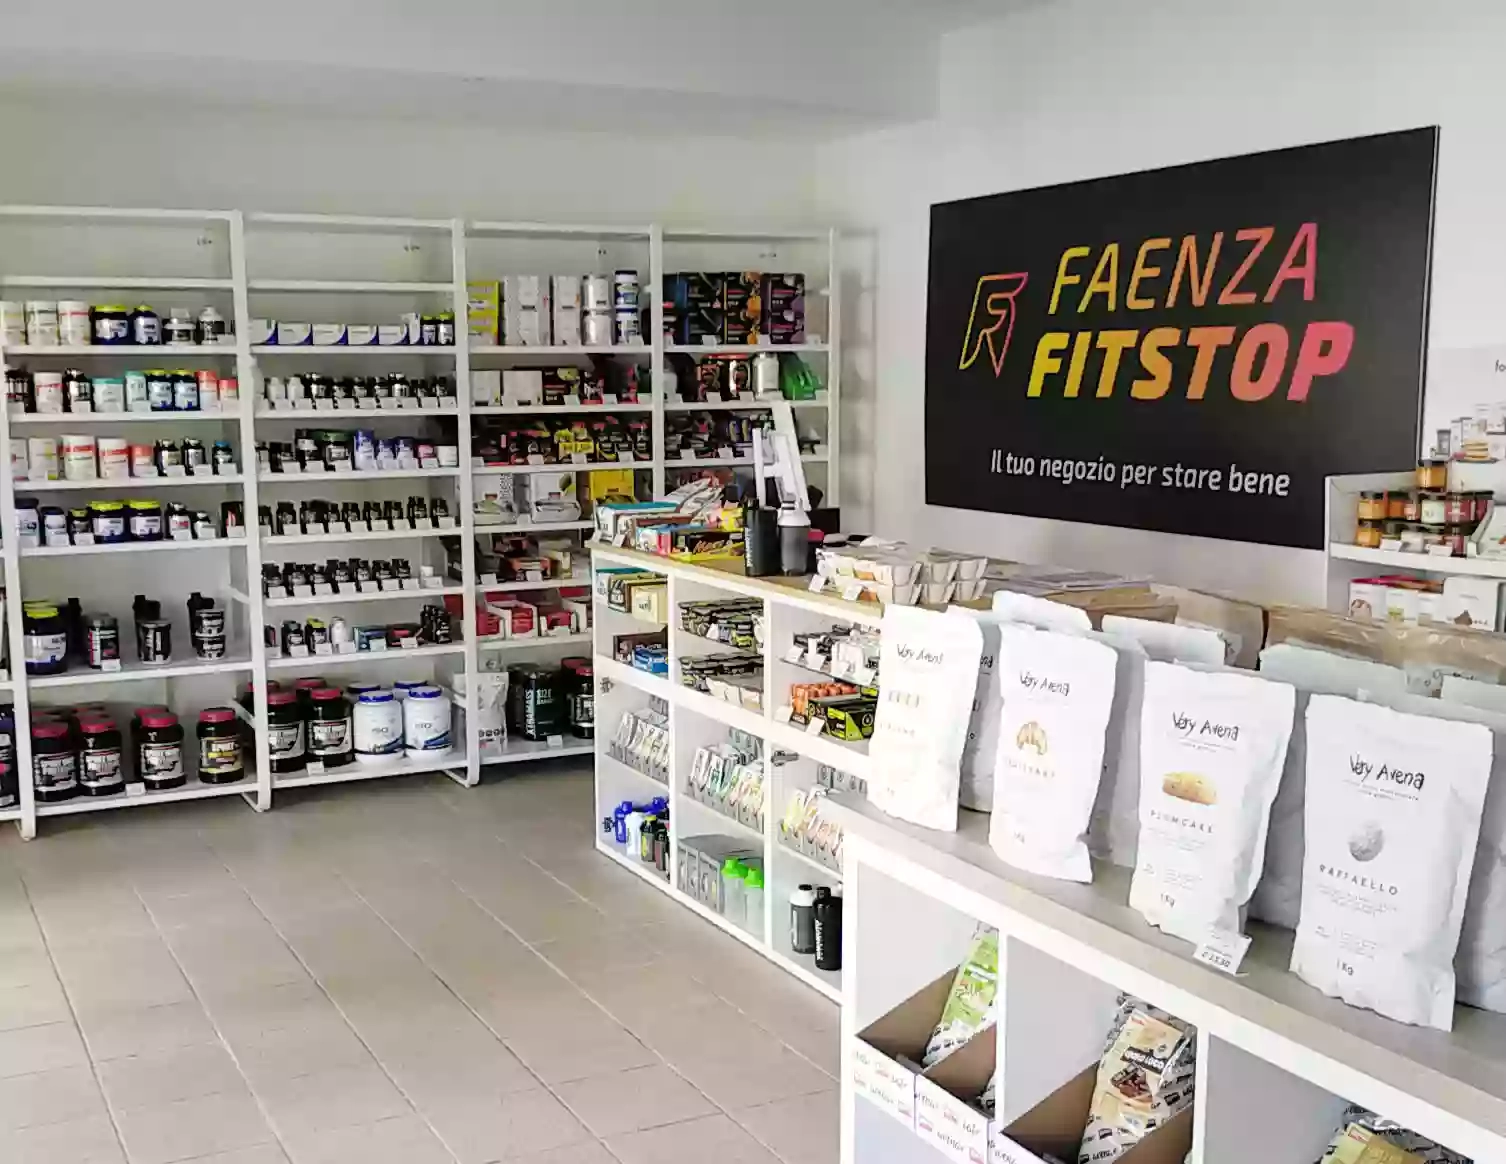 Faenza FITSTOP